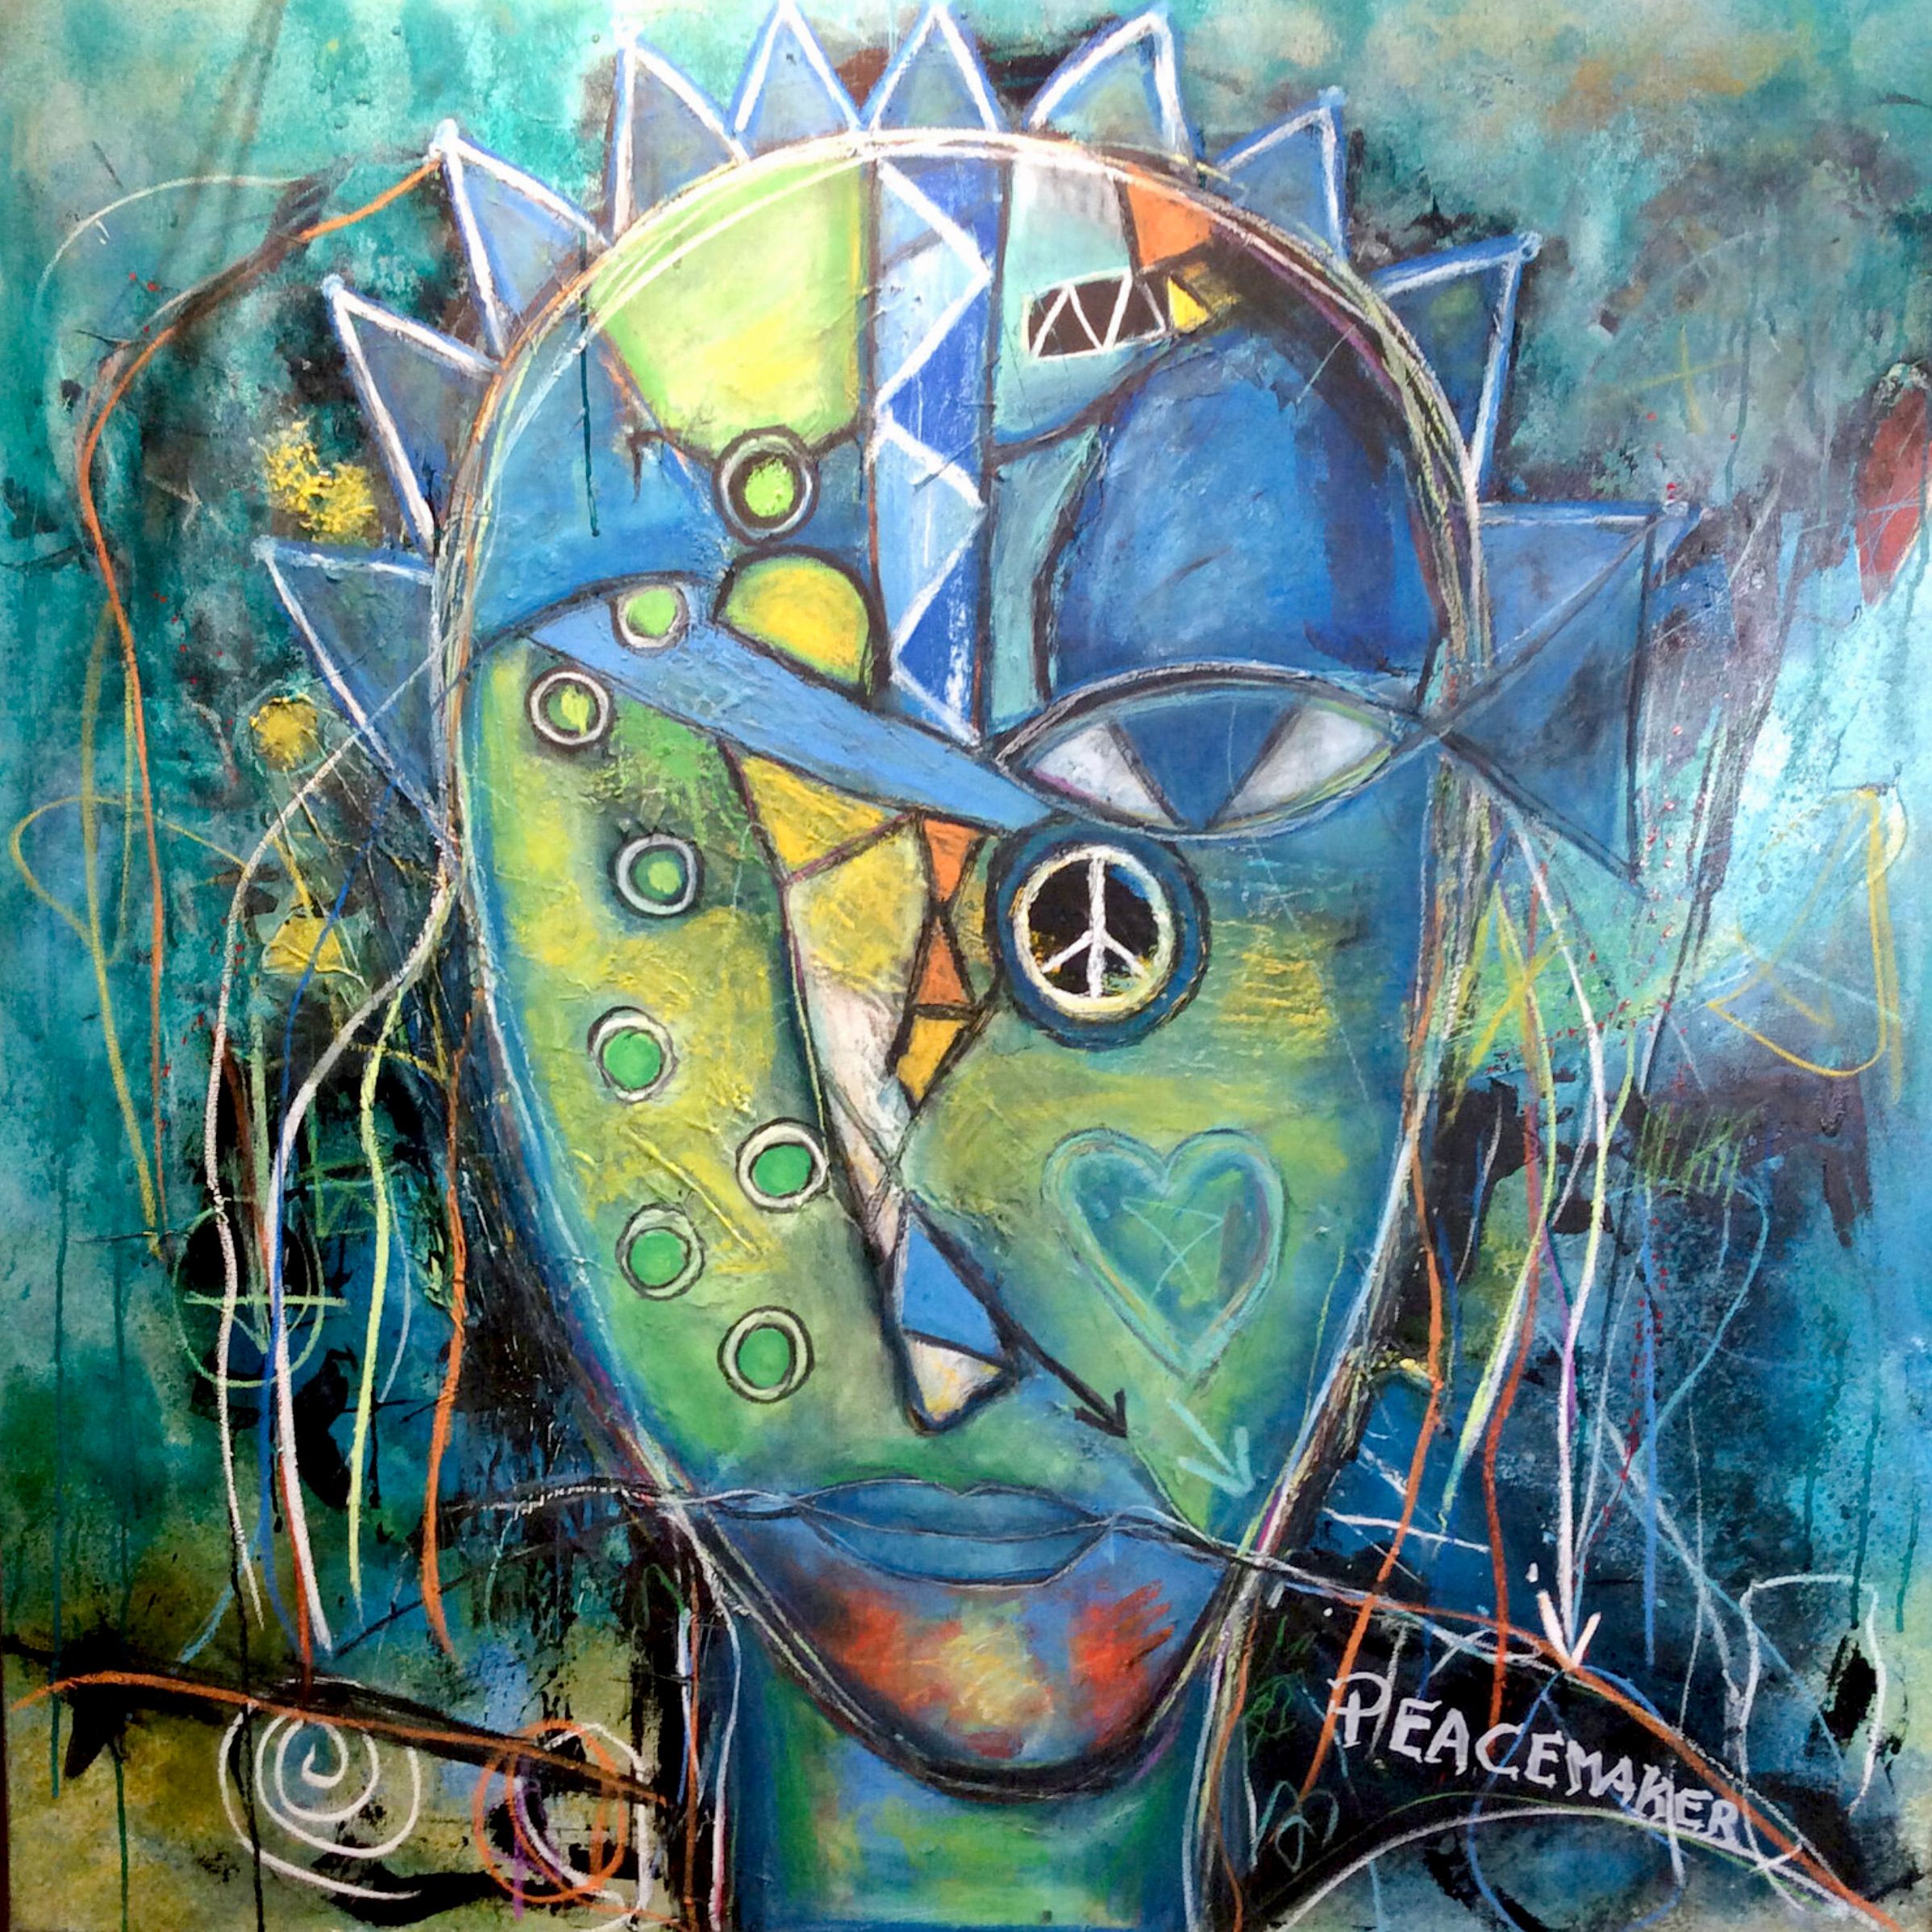 Il ritratto espressionista di Ilona Schmidt "Il pacificatore... in cerca di un nuovo lavoro" mostra un pacificatore in cerca di stabilità e sicurezza. La tavolozza dei colori del dipinto è composta da diverse tonalità di blu, giallo e verde che si fondono armoniosamente tra loro. Il blu rappresenta la pace e la stabilità che il pacificatore cerca, mentre il giallo simboleggia la speranza e la direzione positiva della sua missione.... Il verde rappresenta la natura e trasmette un senso di crescita e sviluppo.